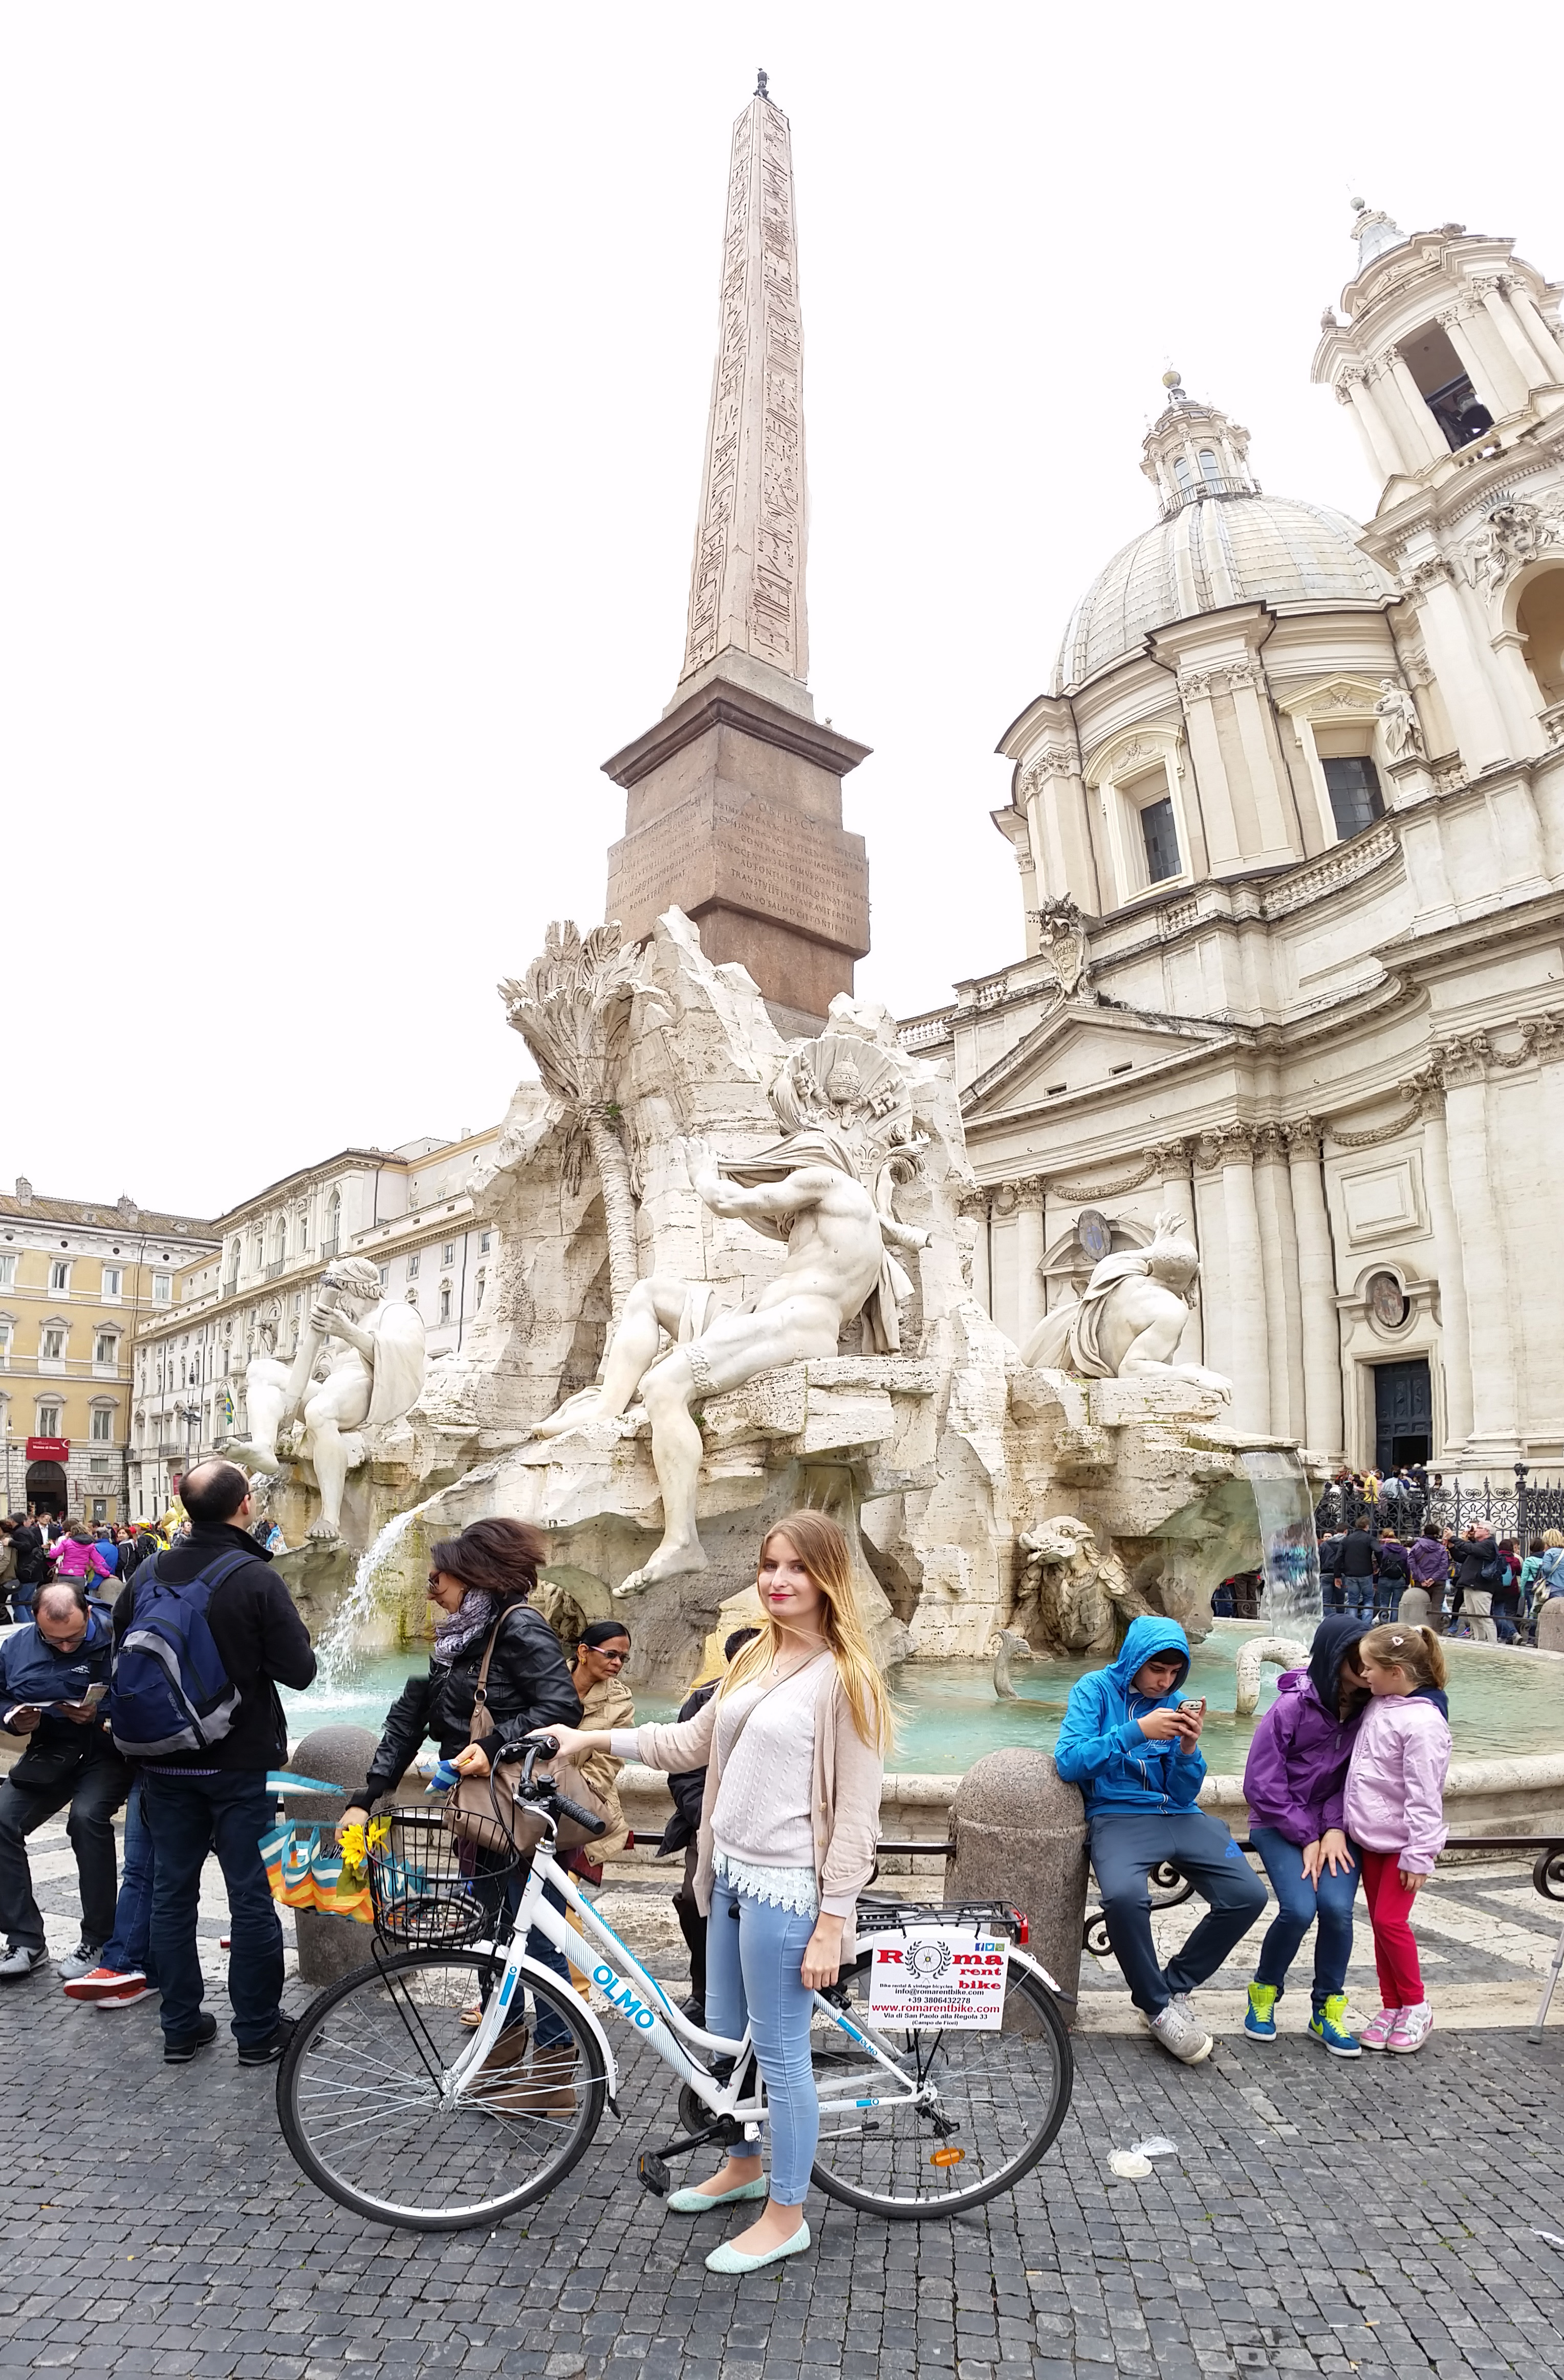 Visiter Rome en Italie